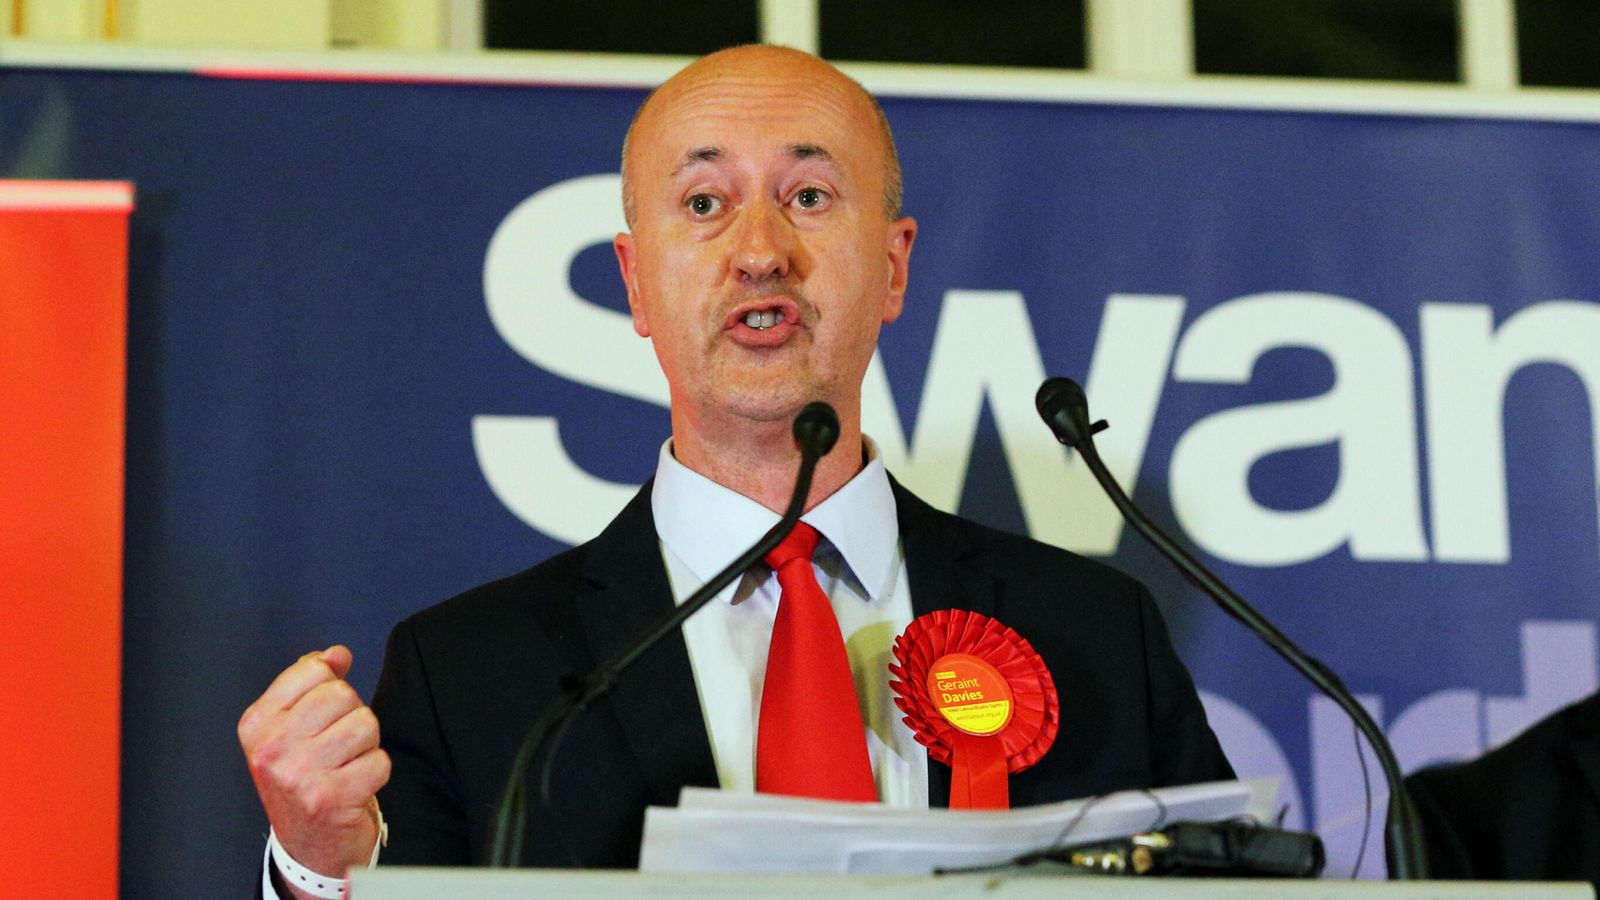 Geraint Davies: Labour receives second formal complaint against suspended MP